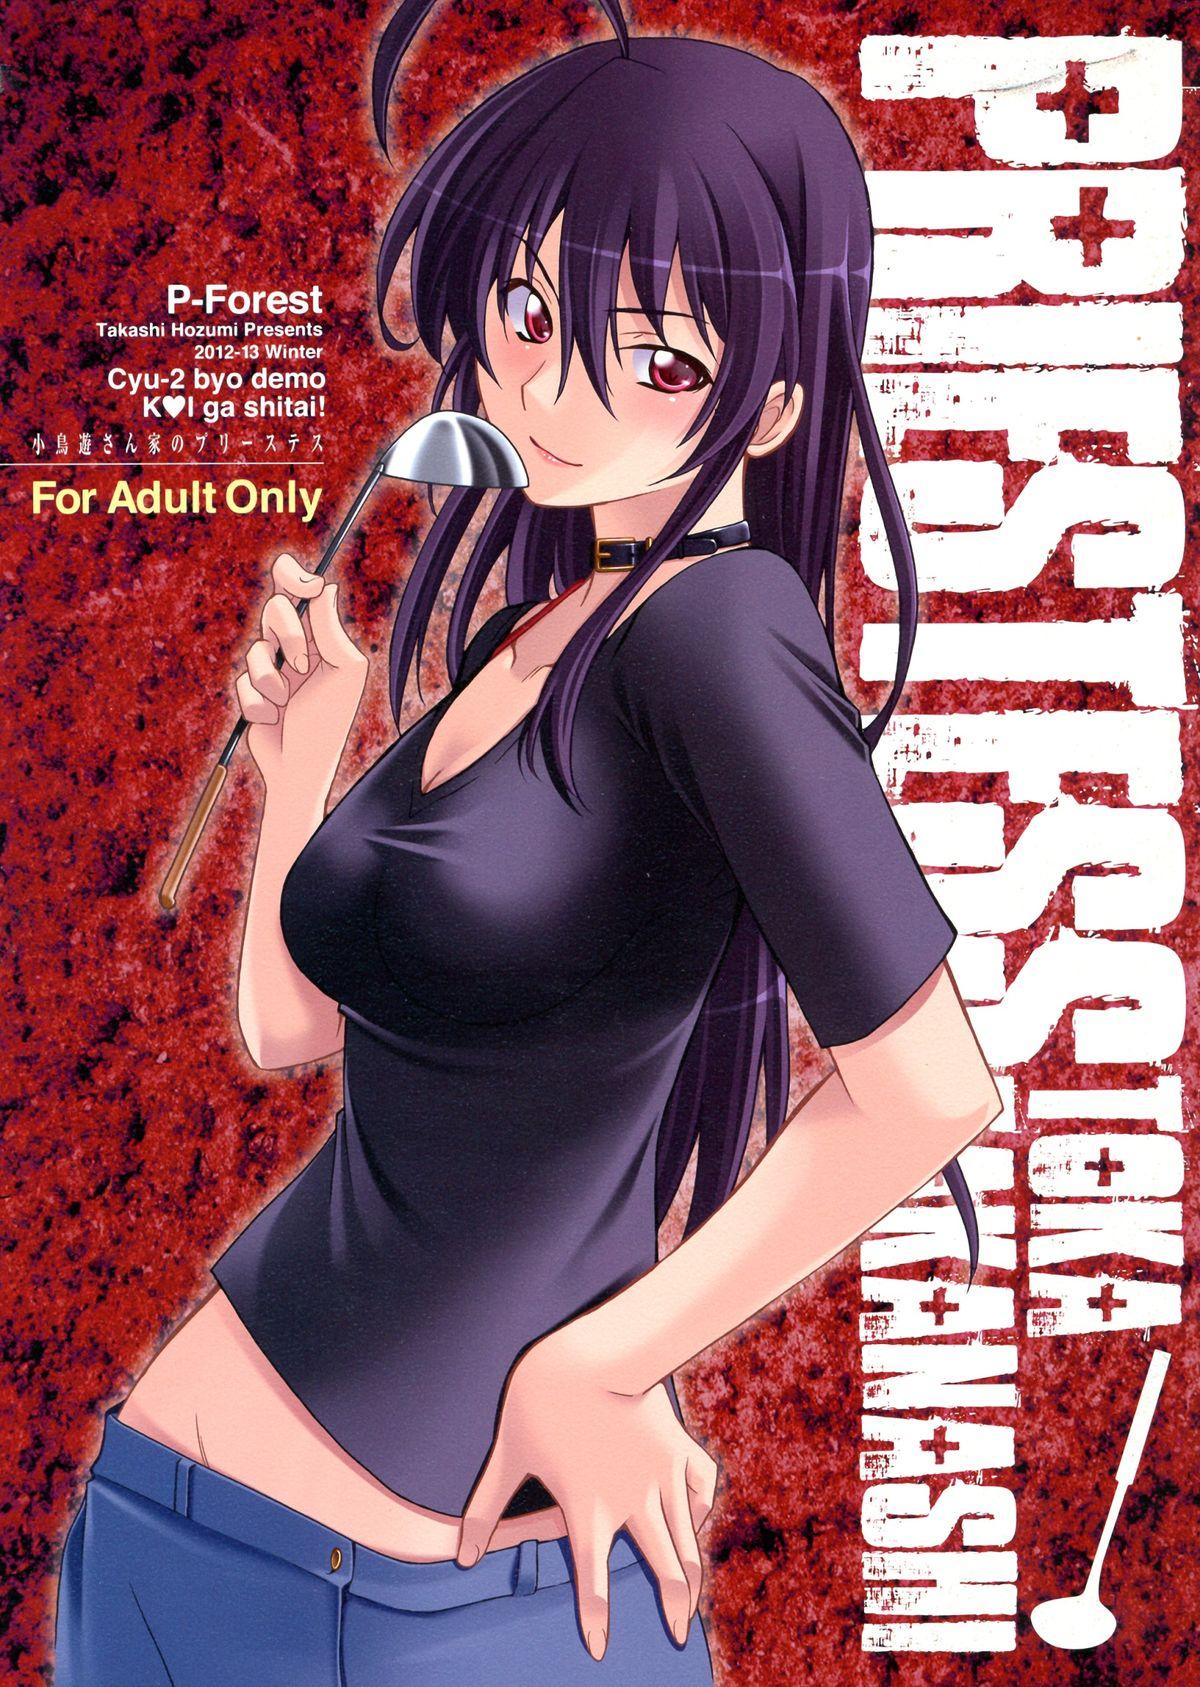 Asses Takanashi-san chi no Priestess - Chuunibyou demo koi ga shitai Hard Core Porn - Picture 1